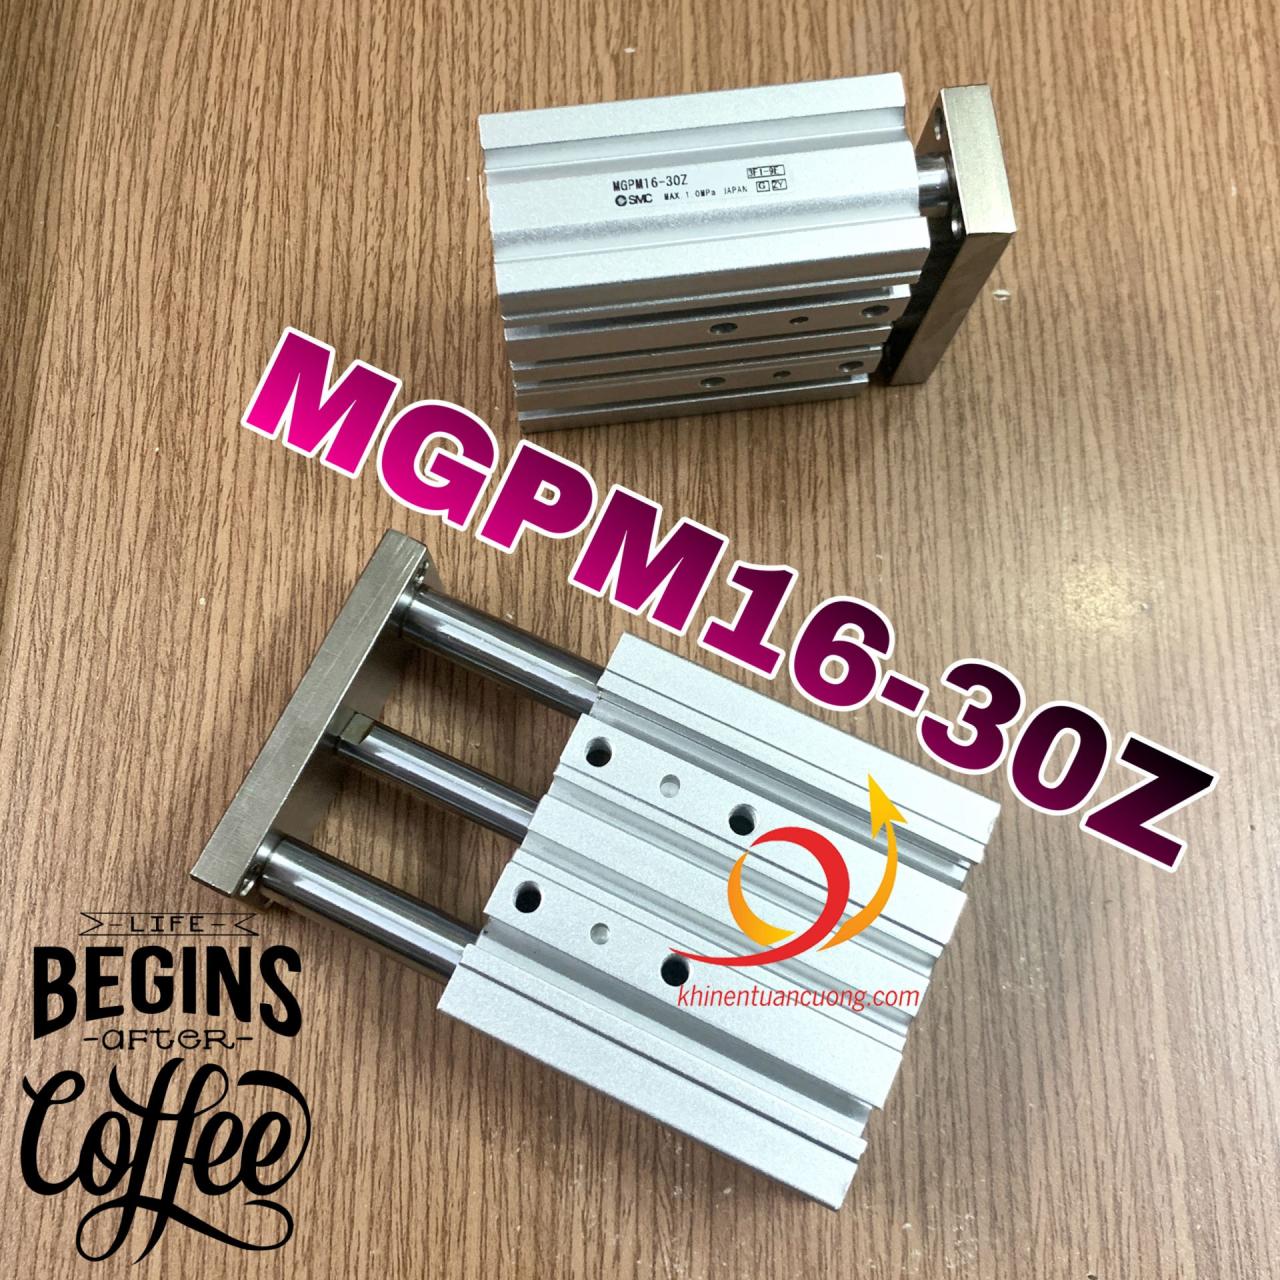 MGPM16-30Z là chiếc xy lanh dẫn hướng 3 ty có sẵn vòng từ bên trong để dùng với cảm biến. Đường kính pít tông chính là 16mm và hành trình là 30mm